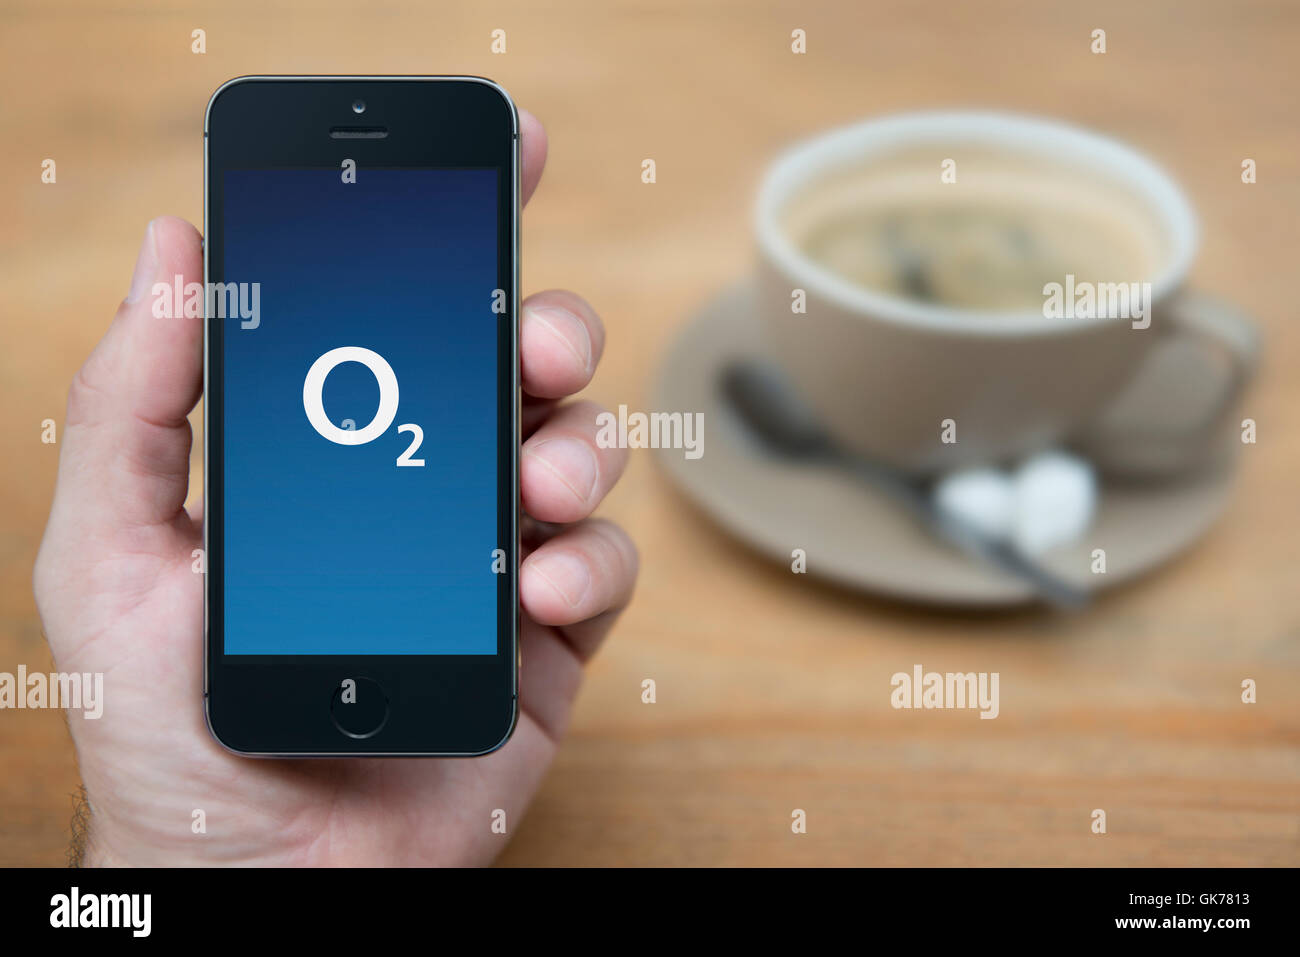 Un uomo guarda al suo iPhone che consente di visualizzare l'O2 logo, mentre sat con una tazza di caffè (solo uso editoriale). Foto Stock